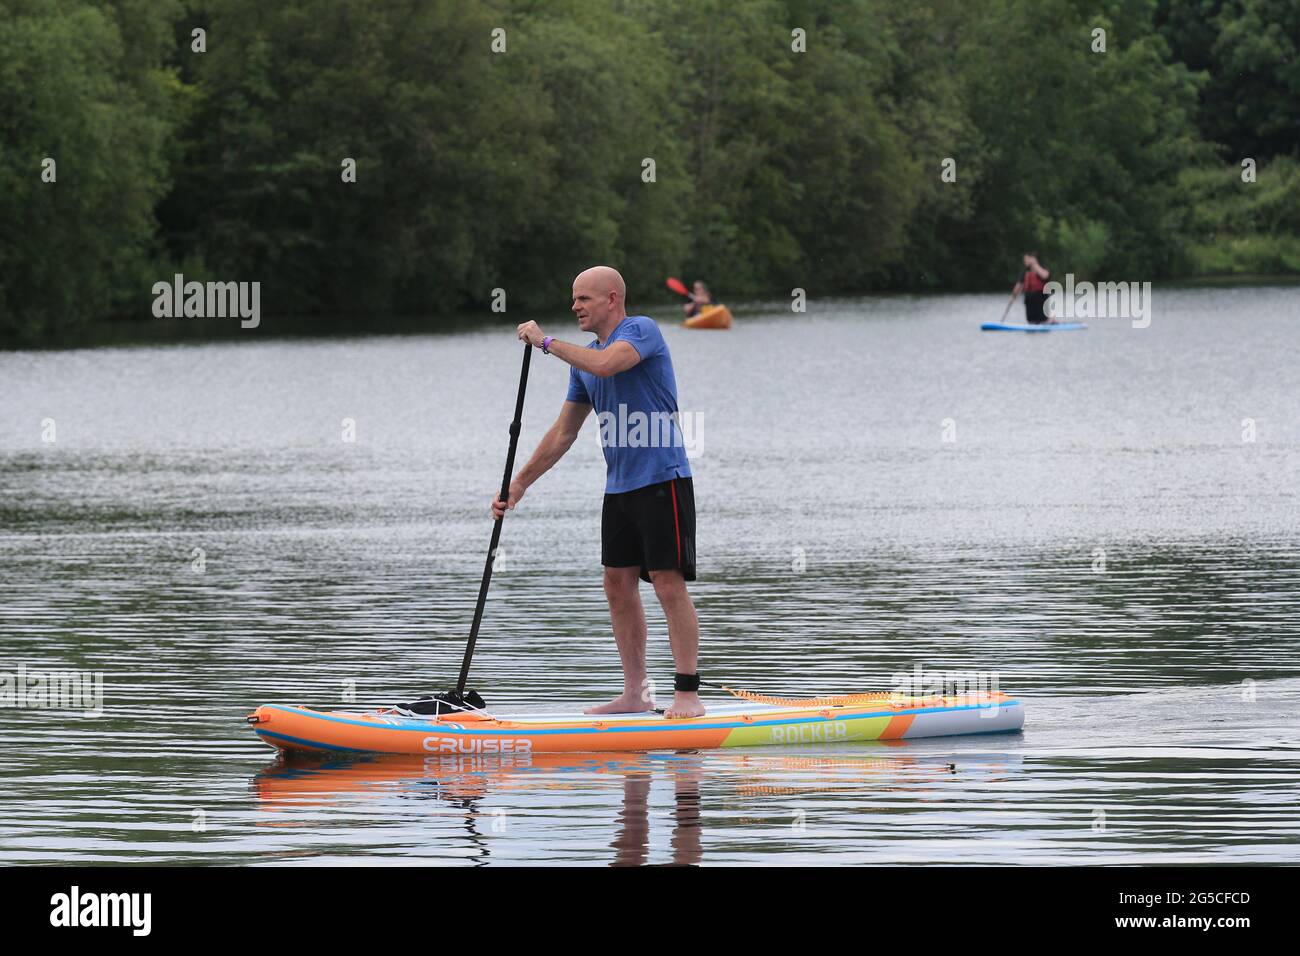 Cirencester, Großbritannien, 26. Juni 2021. Wetter in Großbritannien. Ein schöner sonniger Tag im Cotswold Water Park, während die Menschen Wassersport auf dem See treiben. Wiltshire. Kredit: Gary Learmonth / Alamy Live Nachrichten Stockfoto